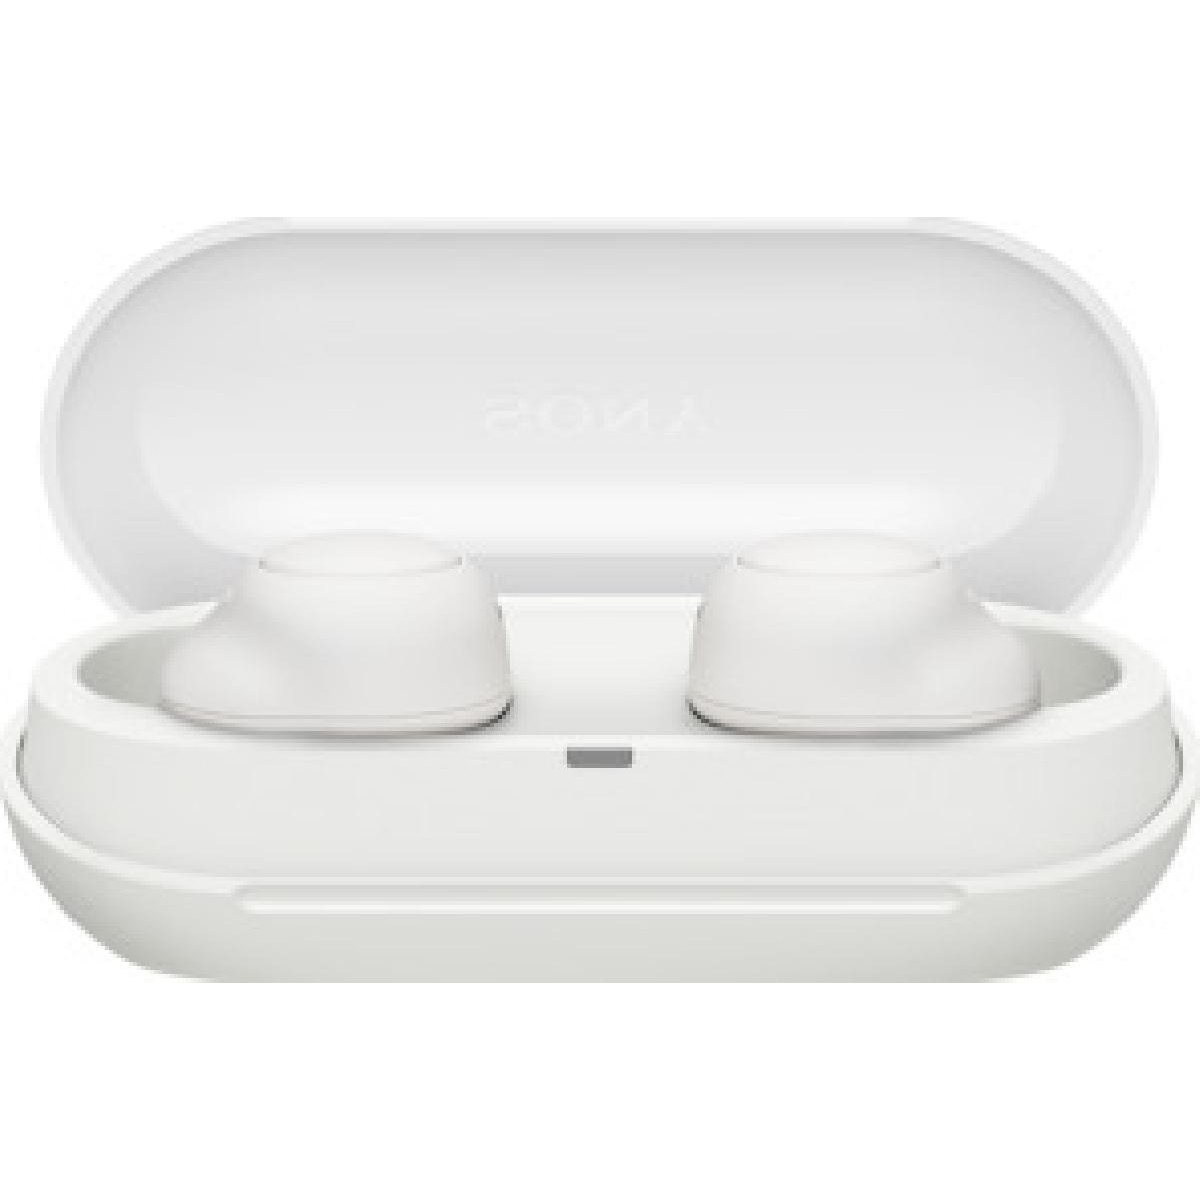 Sony WF-C500W True Wireless In-Ear Headphones White